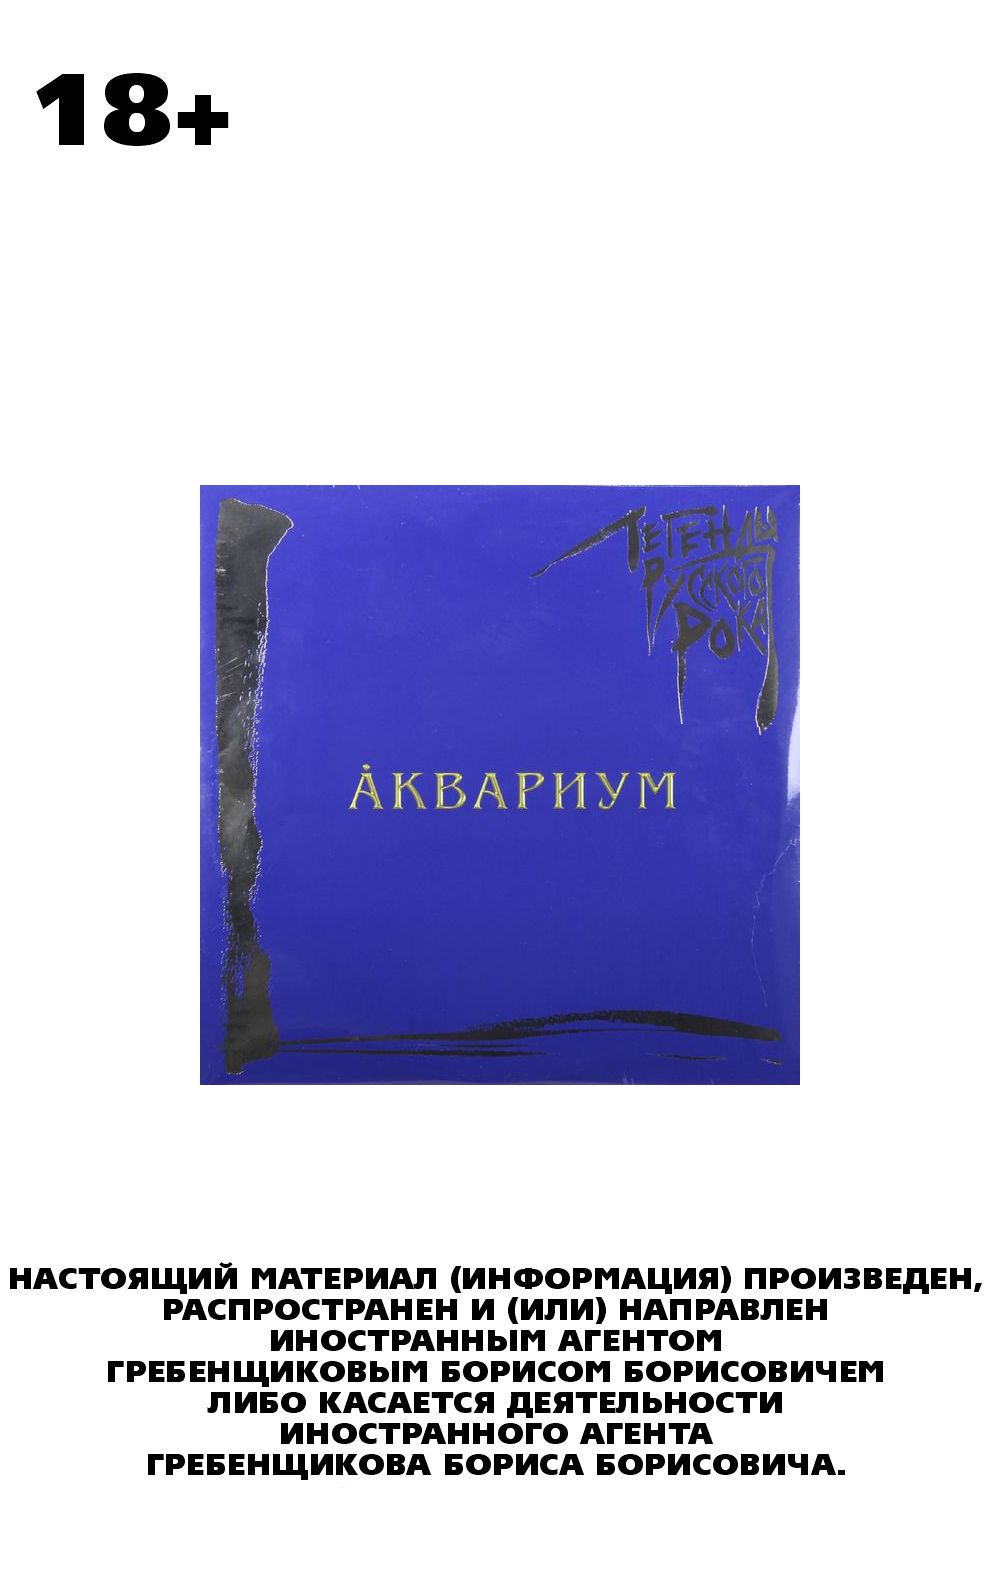 Аквариум – Легенды русского рока Coloured Blue Vinyl (2 LP)